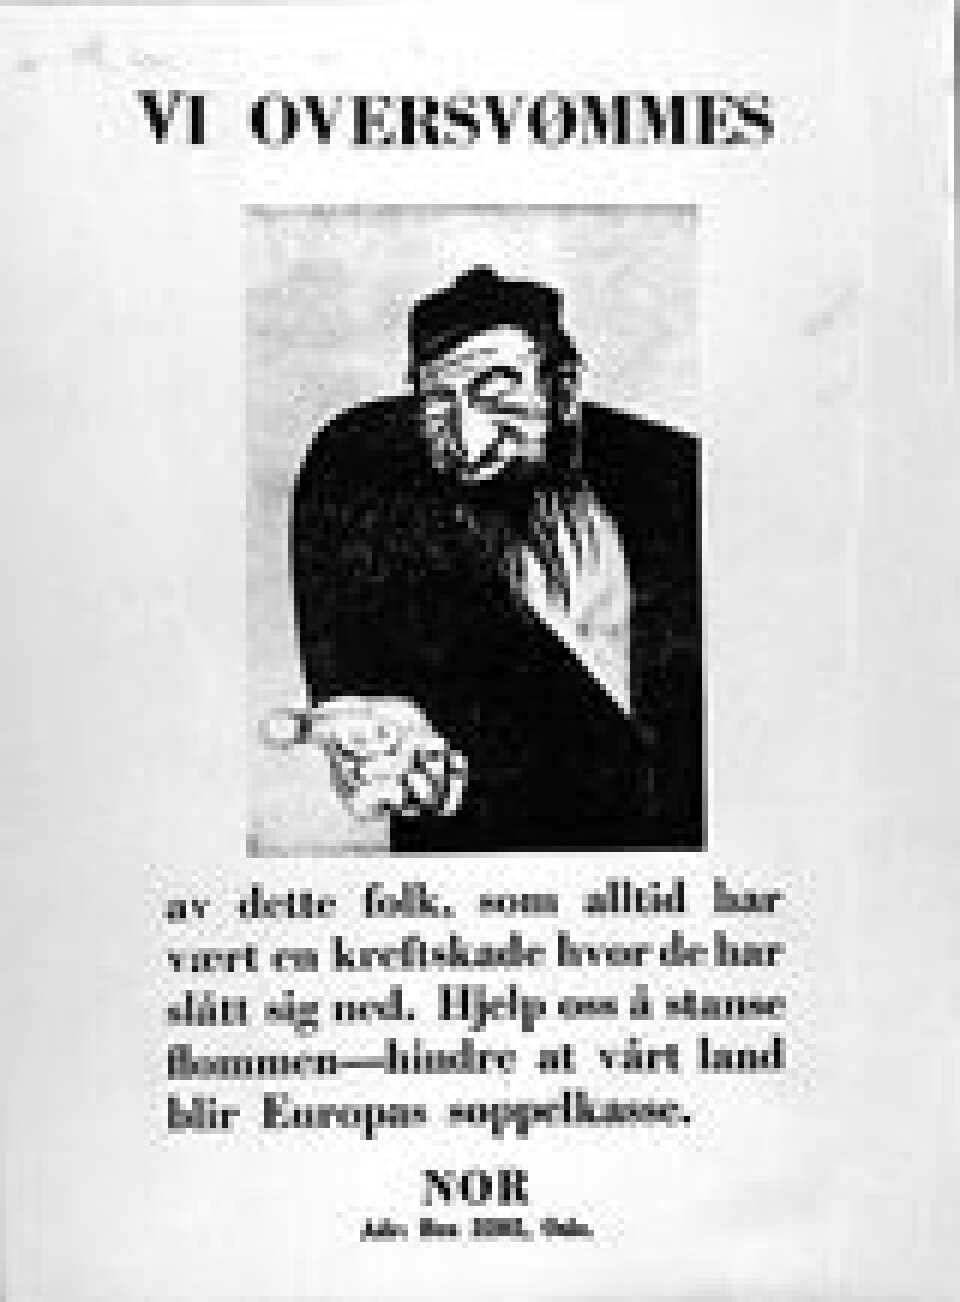 'I november 1938 gjennomførte unger aktivister med bakgrunn i NNSAP og NS en plakataksjon i Oslo. Hovedmannen ble stil for retten, men frikjent da man egentlig ikke hadde '